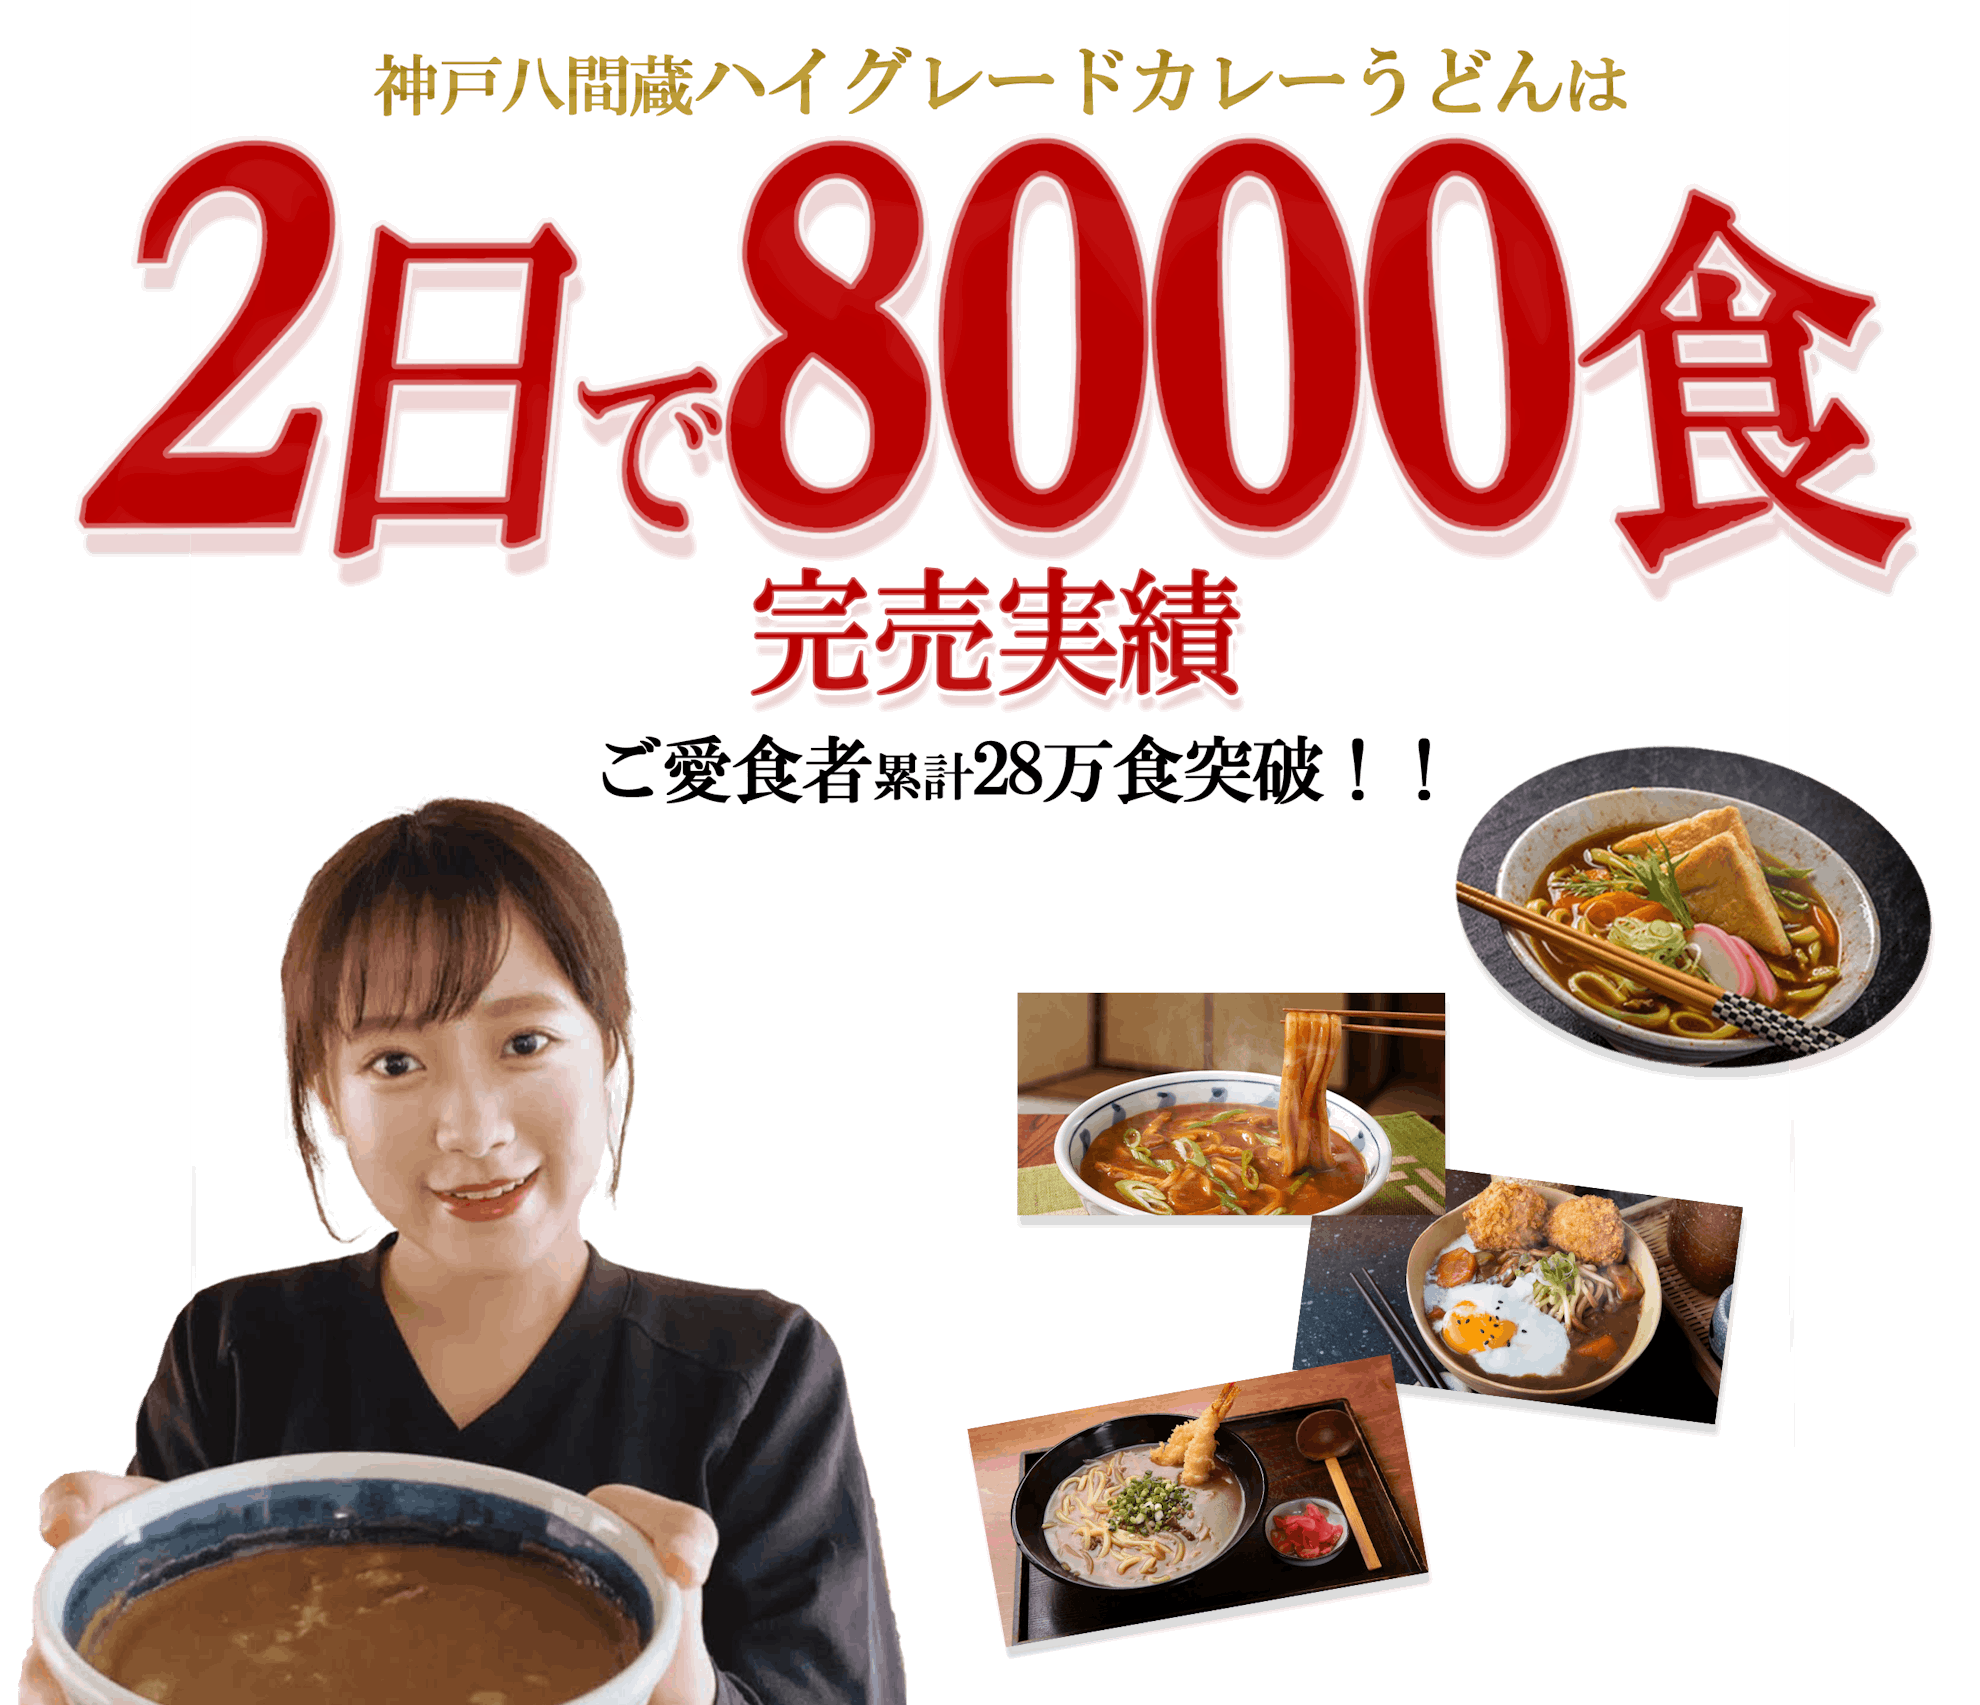 神戸八間蔵ハイグレードカレーうどんは2日で8000食完売実績